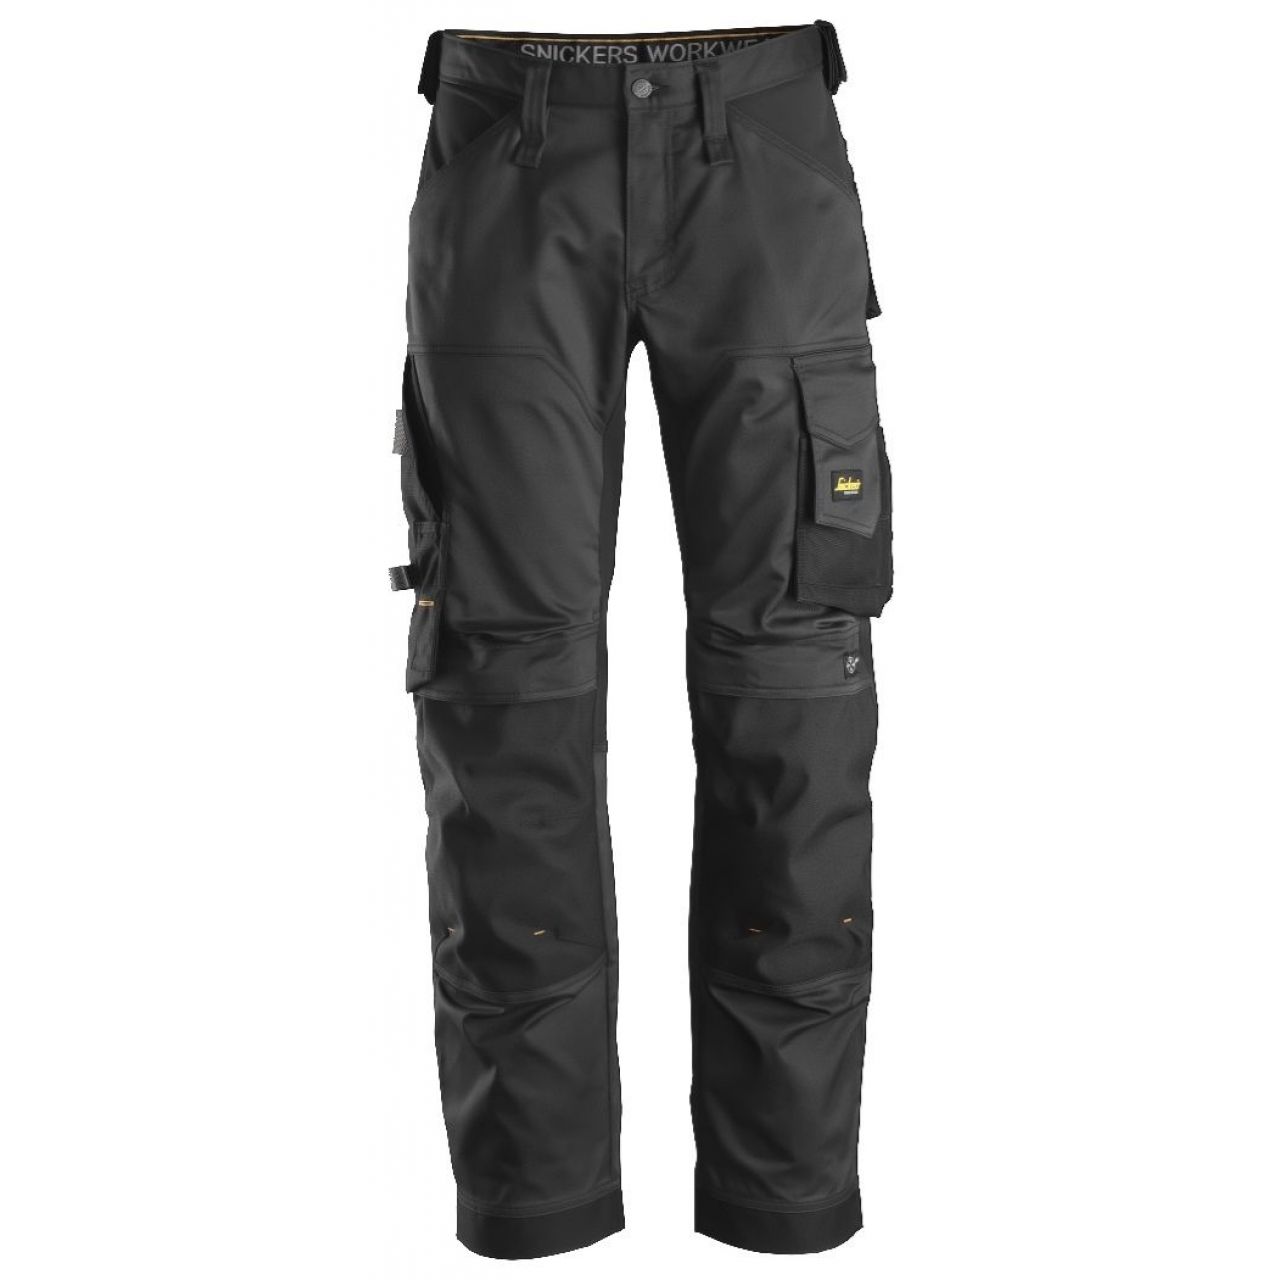 Pantalon elastico ajuste holgado AllroundWork negro talla 120